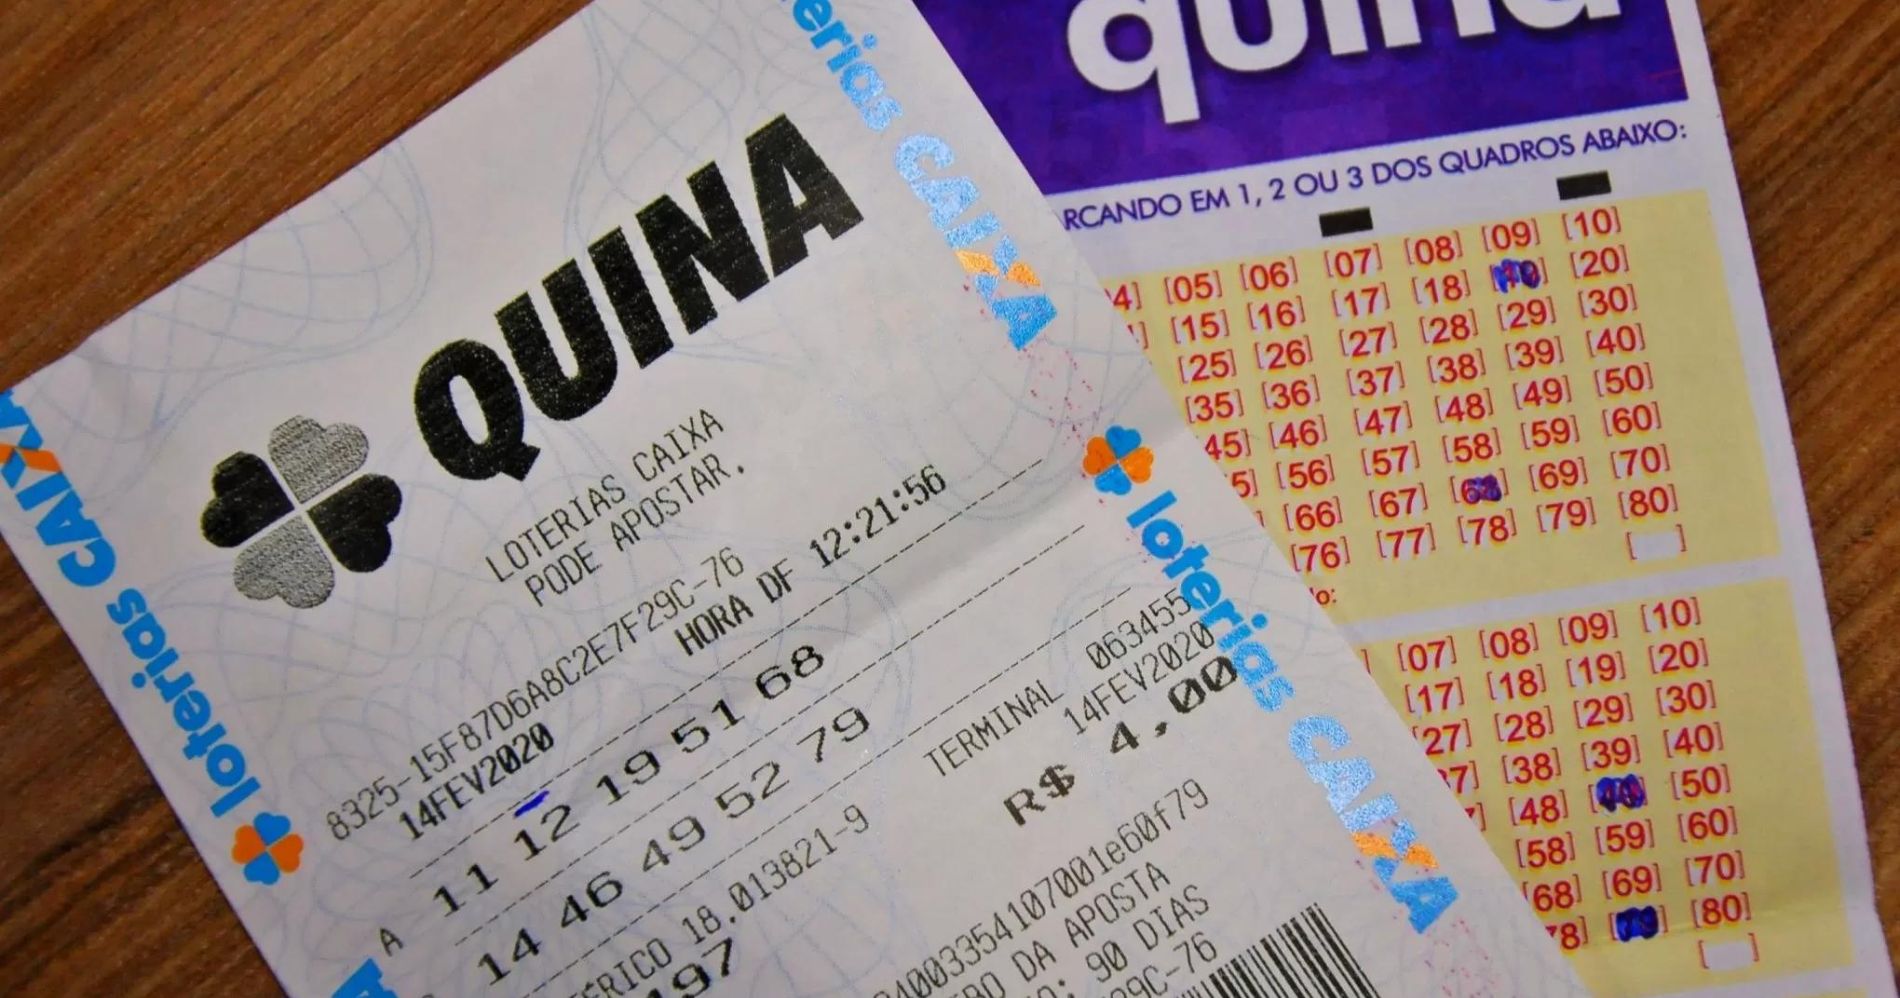 Veja resultado da Quina 6228 desta terça-feira (29): Prêmio de R$ 1,5  Milhão em Jogo - Jornal União Campina Grande do Sul